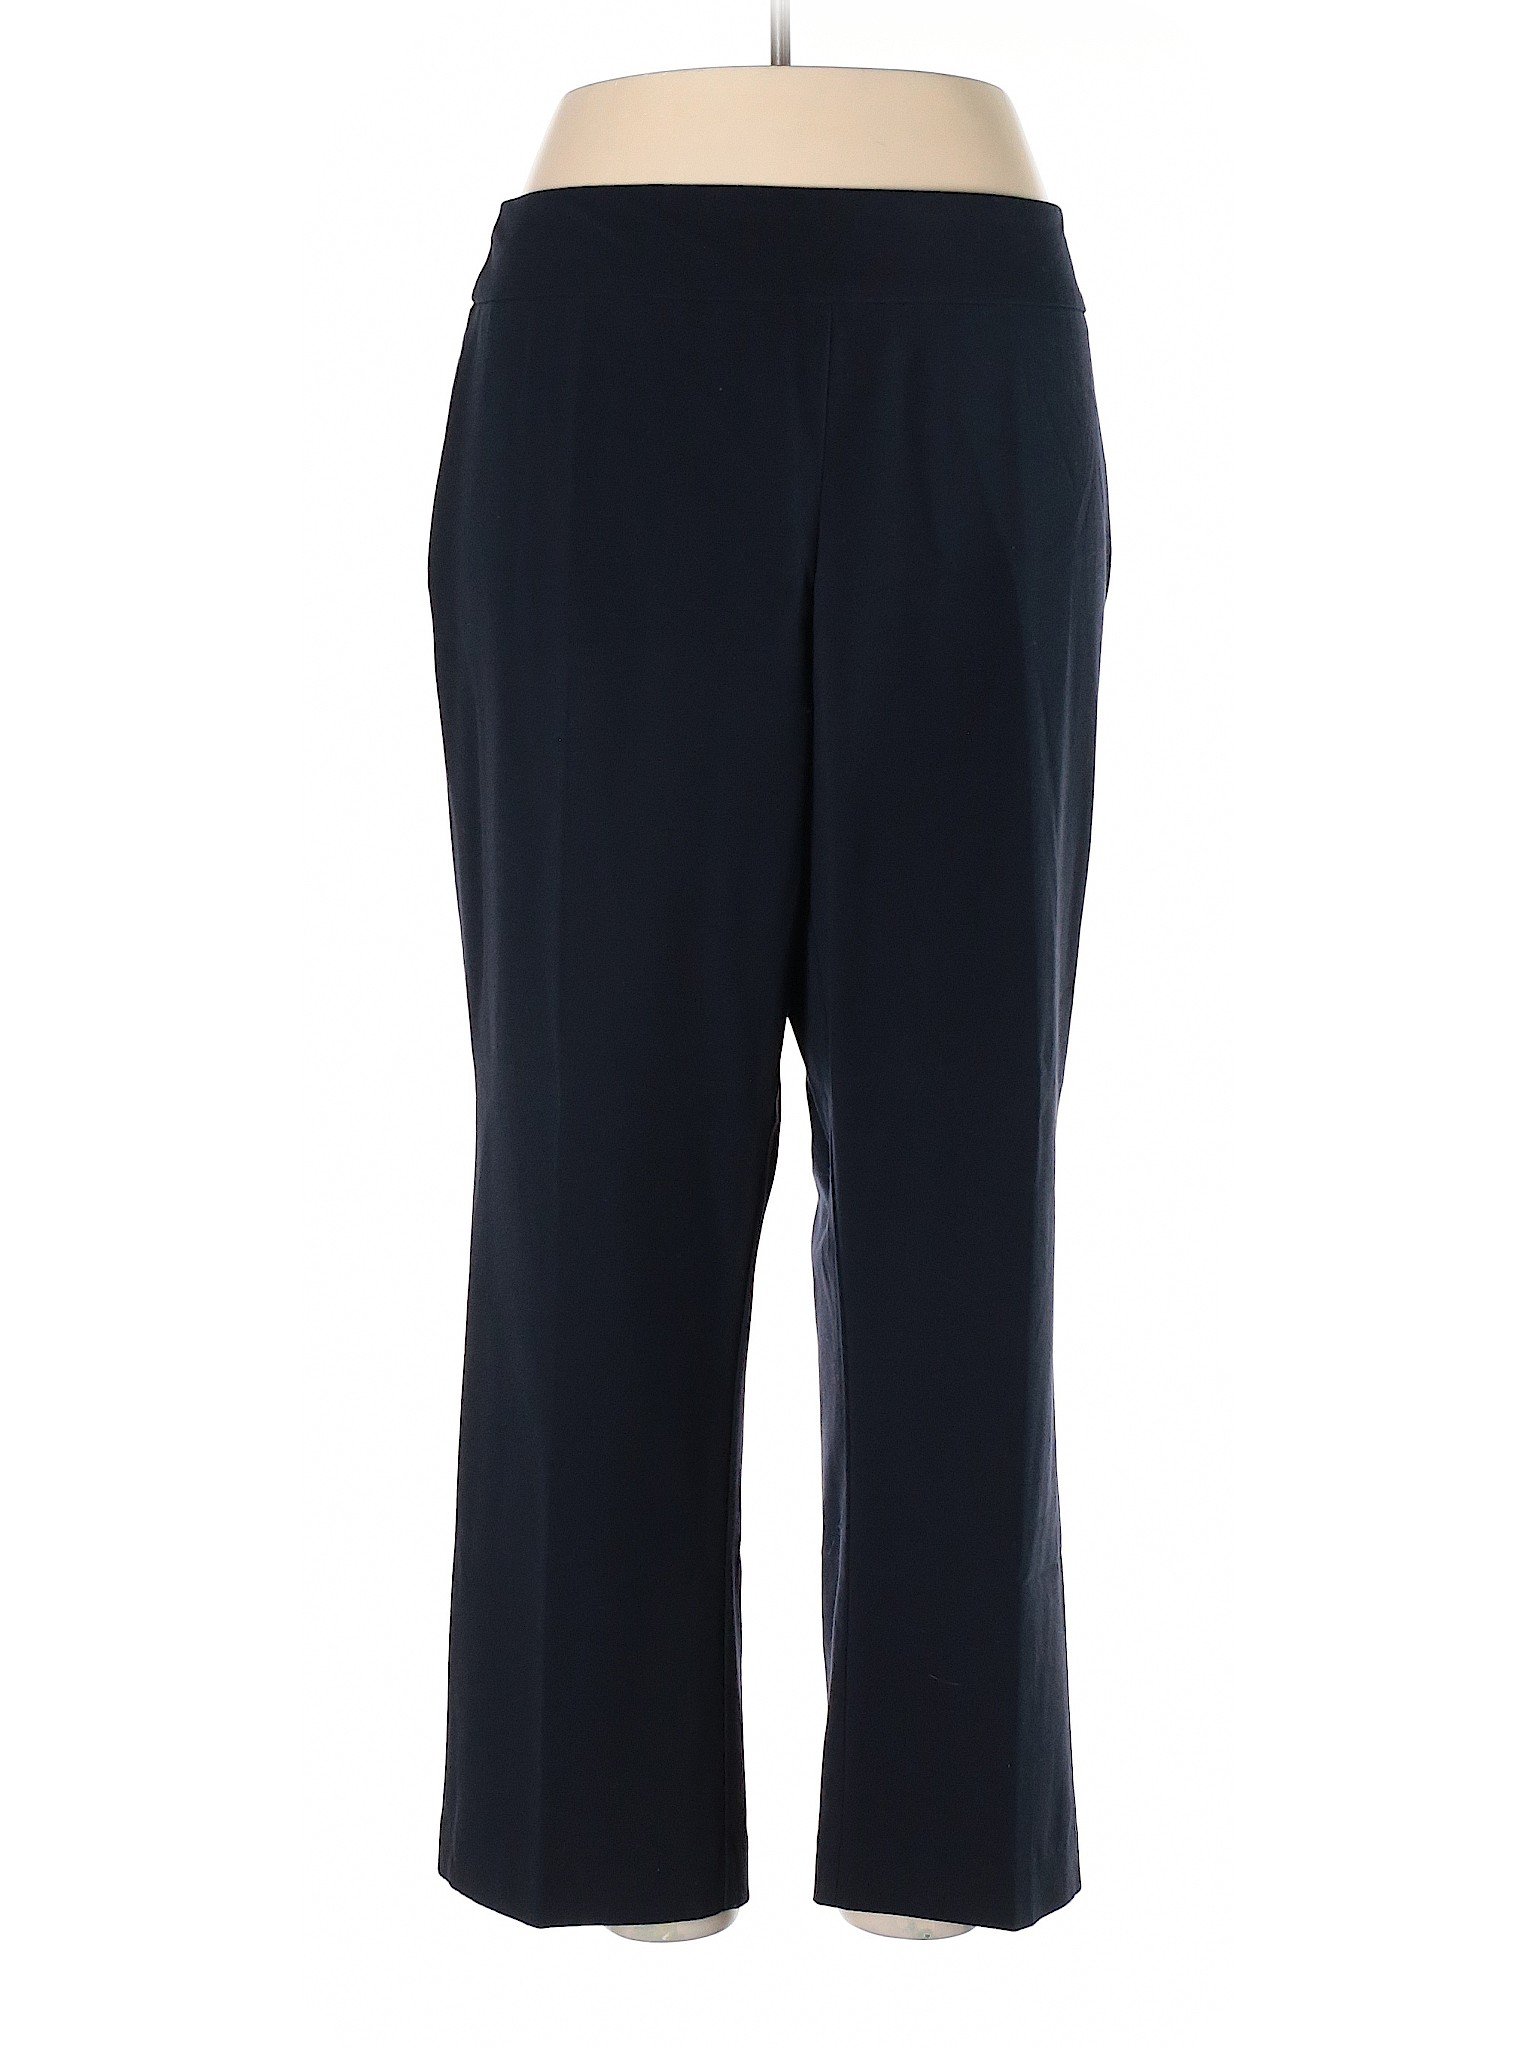 Roz & Ali Women Black Dress Pants 16 | eBay